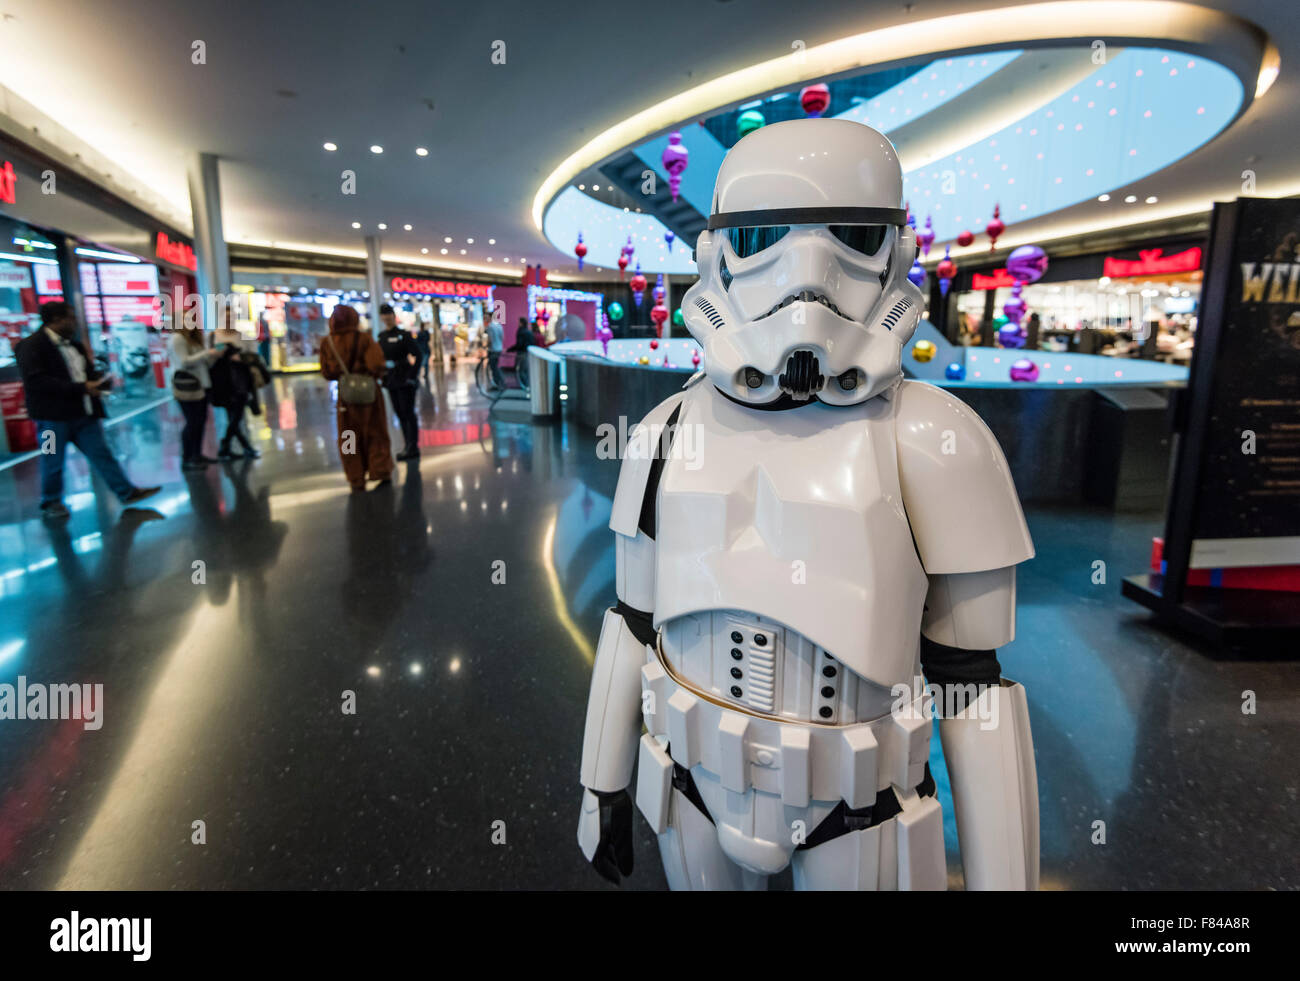 Zurigo, Svizzera. 05 Dic, 2015. Un vestito di Star Wars Stormtrooper Imperiale è in piedi in un centro commerciale di Zurigo. Credito: Erik Tham/Alamy Live News Foto Stock